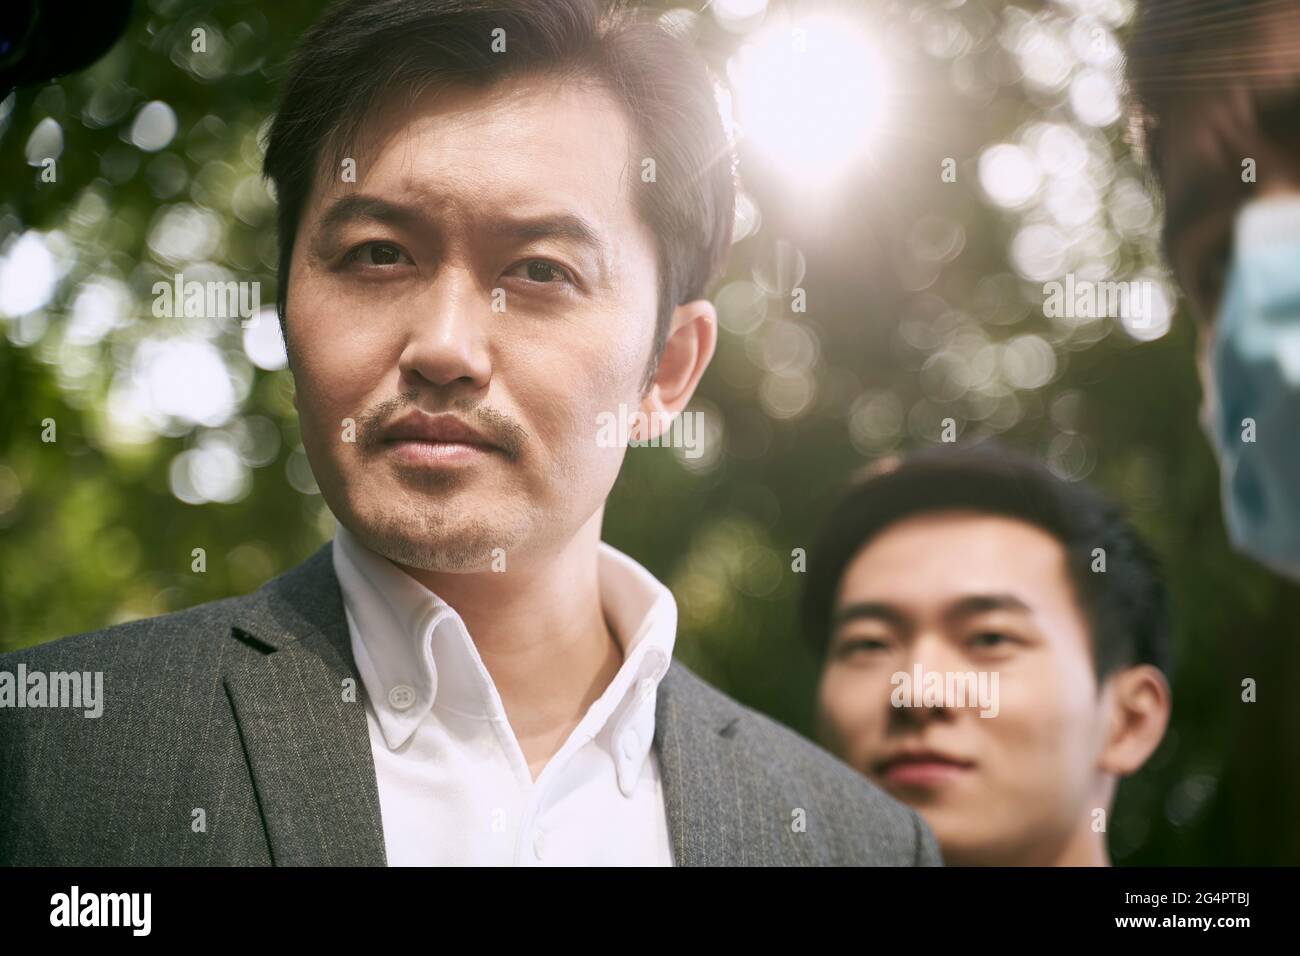 asiatischer Geschäftsmann, der mit einem lustigen Gesichtsausdruck auf die Kamera schaut Stockfoto